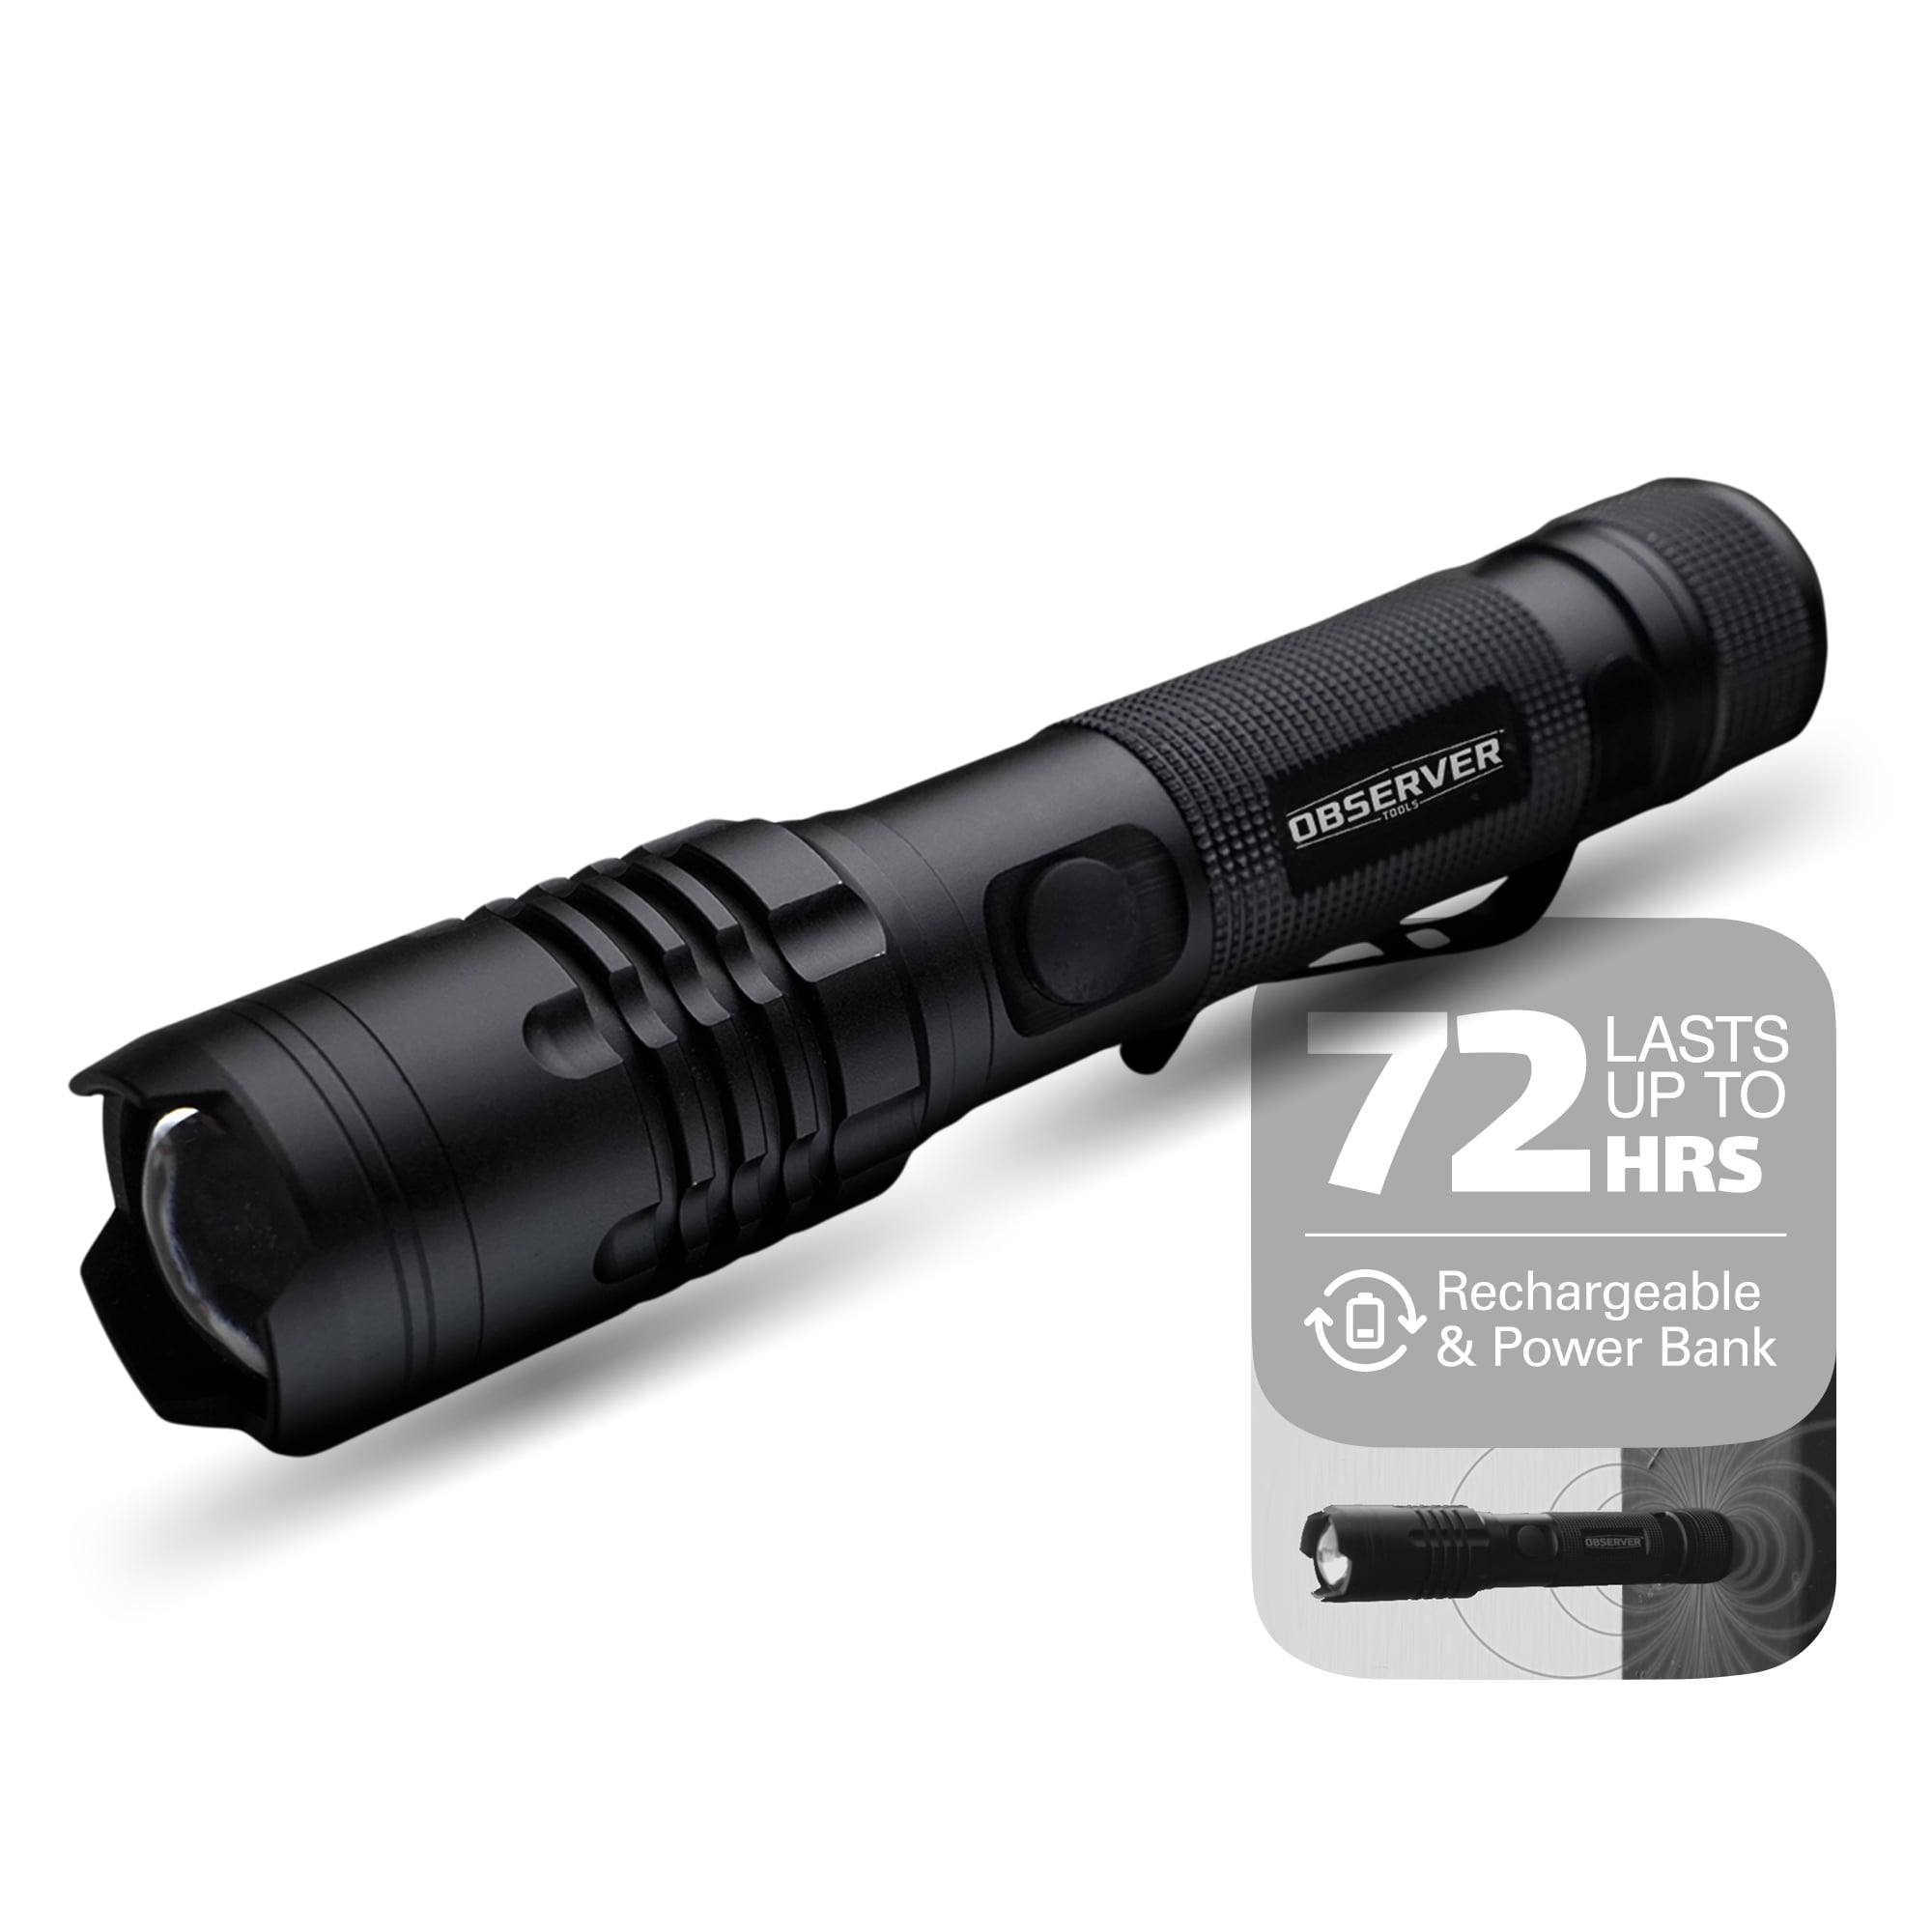 LED Lenser 880028 V2 Pocket-Size LED Flashlight, 104 Lumens, Black -  KnifeCenter - Discontinued